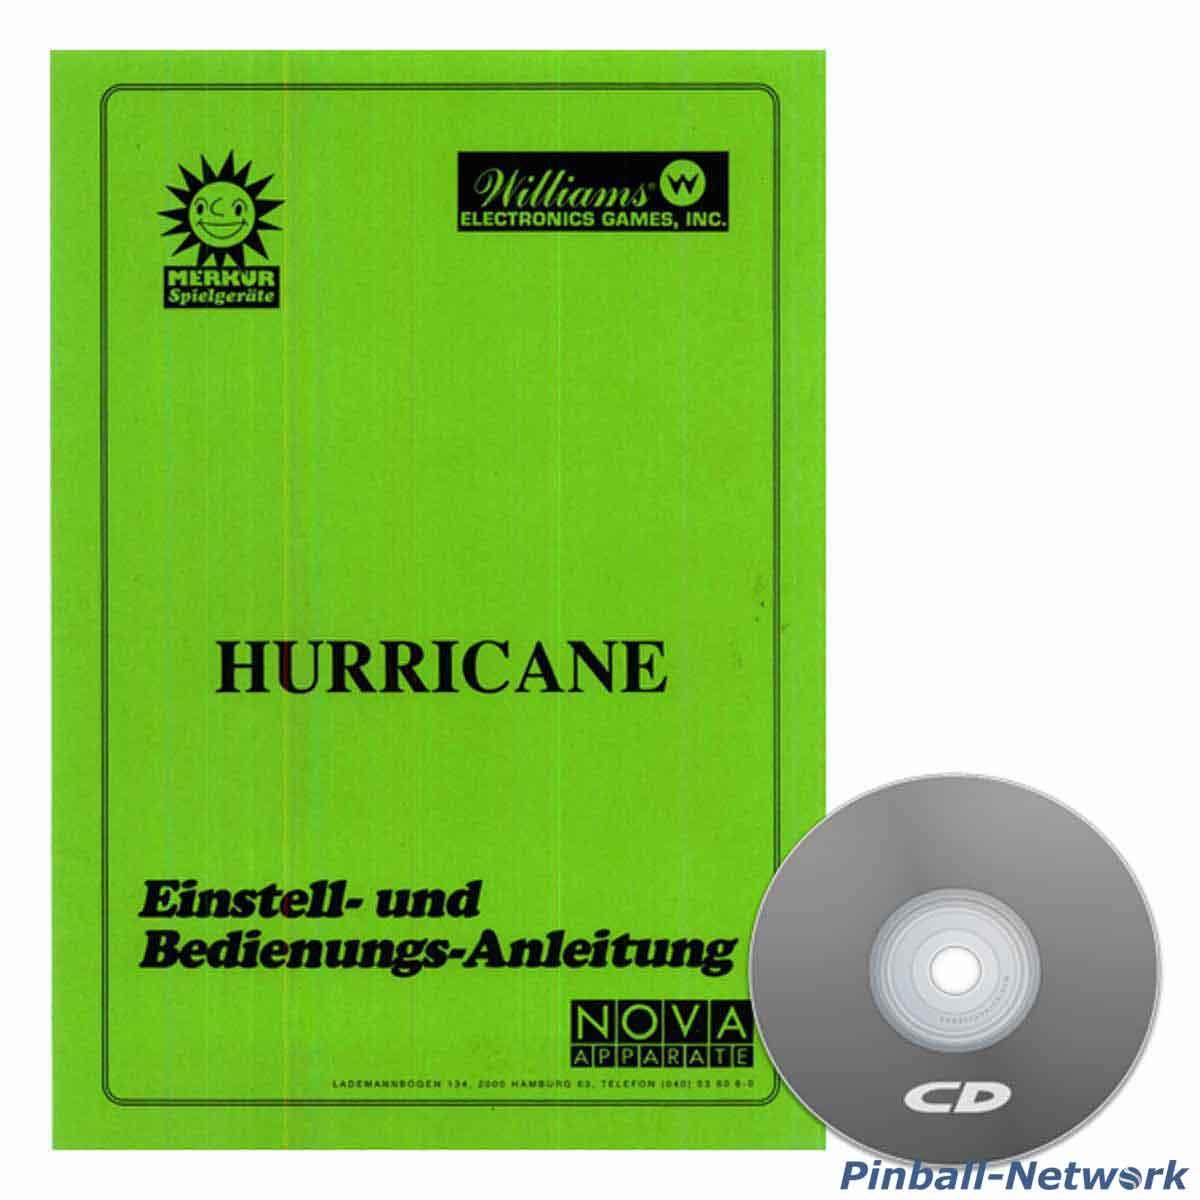 Hurricane Einstell- und Bedienungs-Anleitung